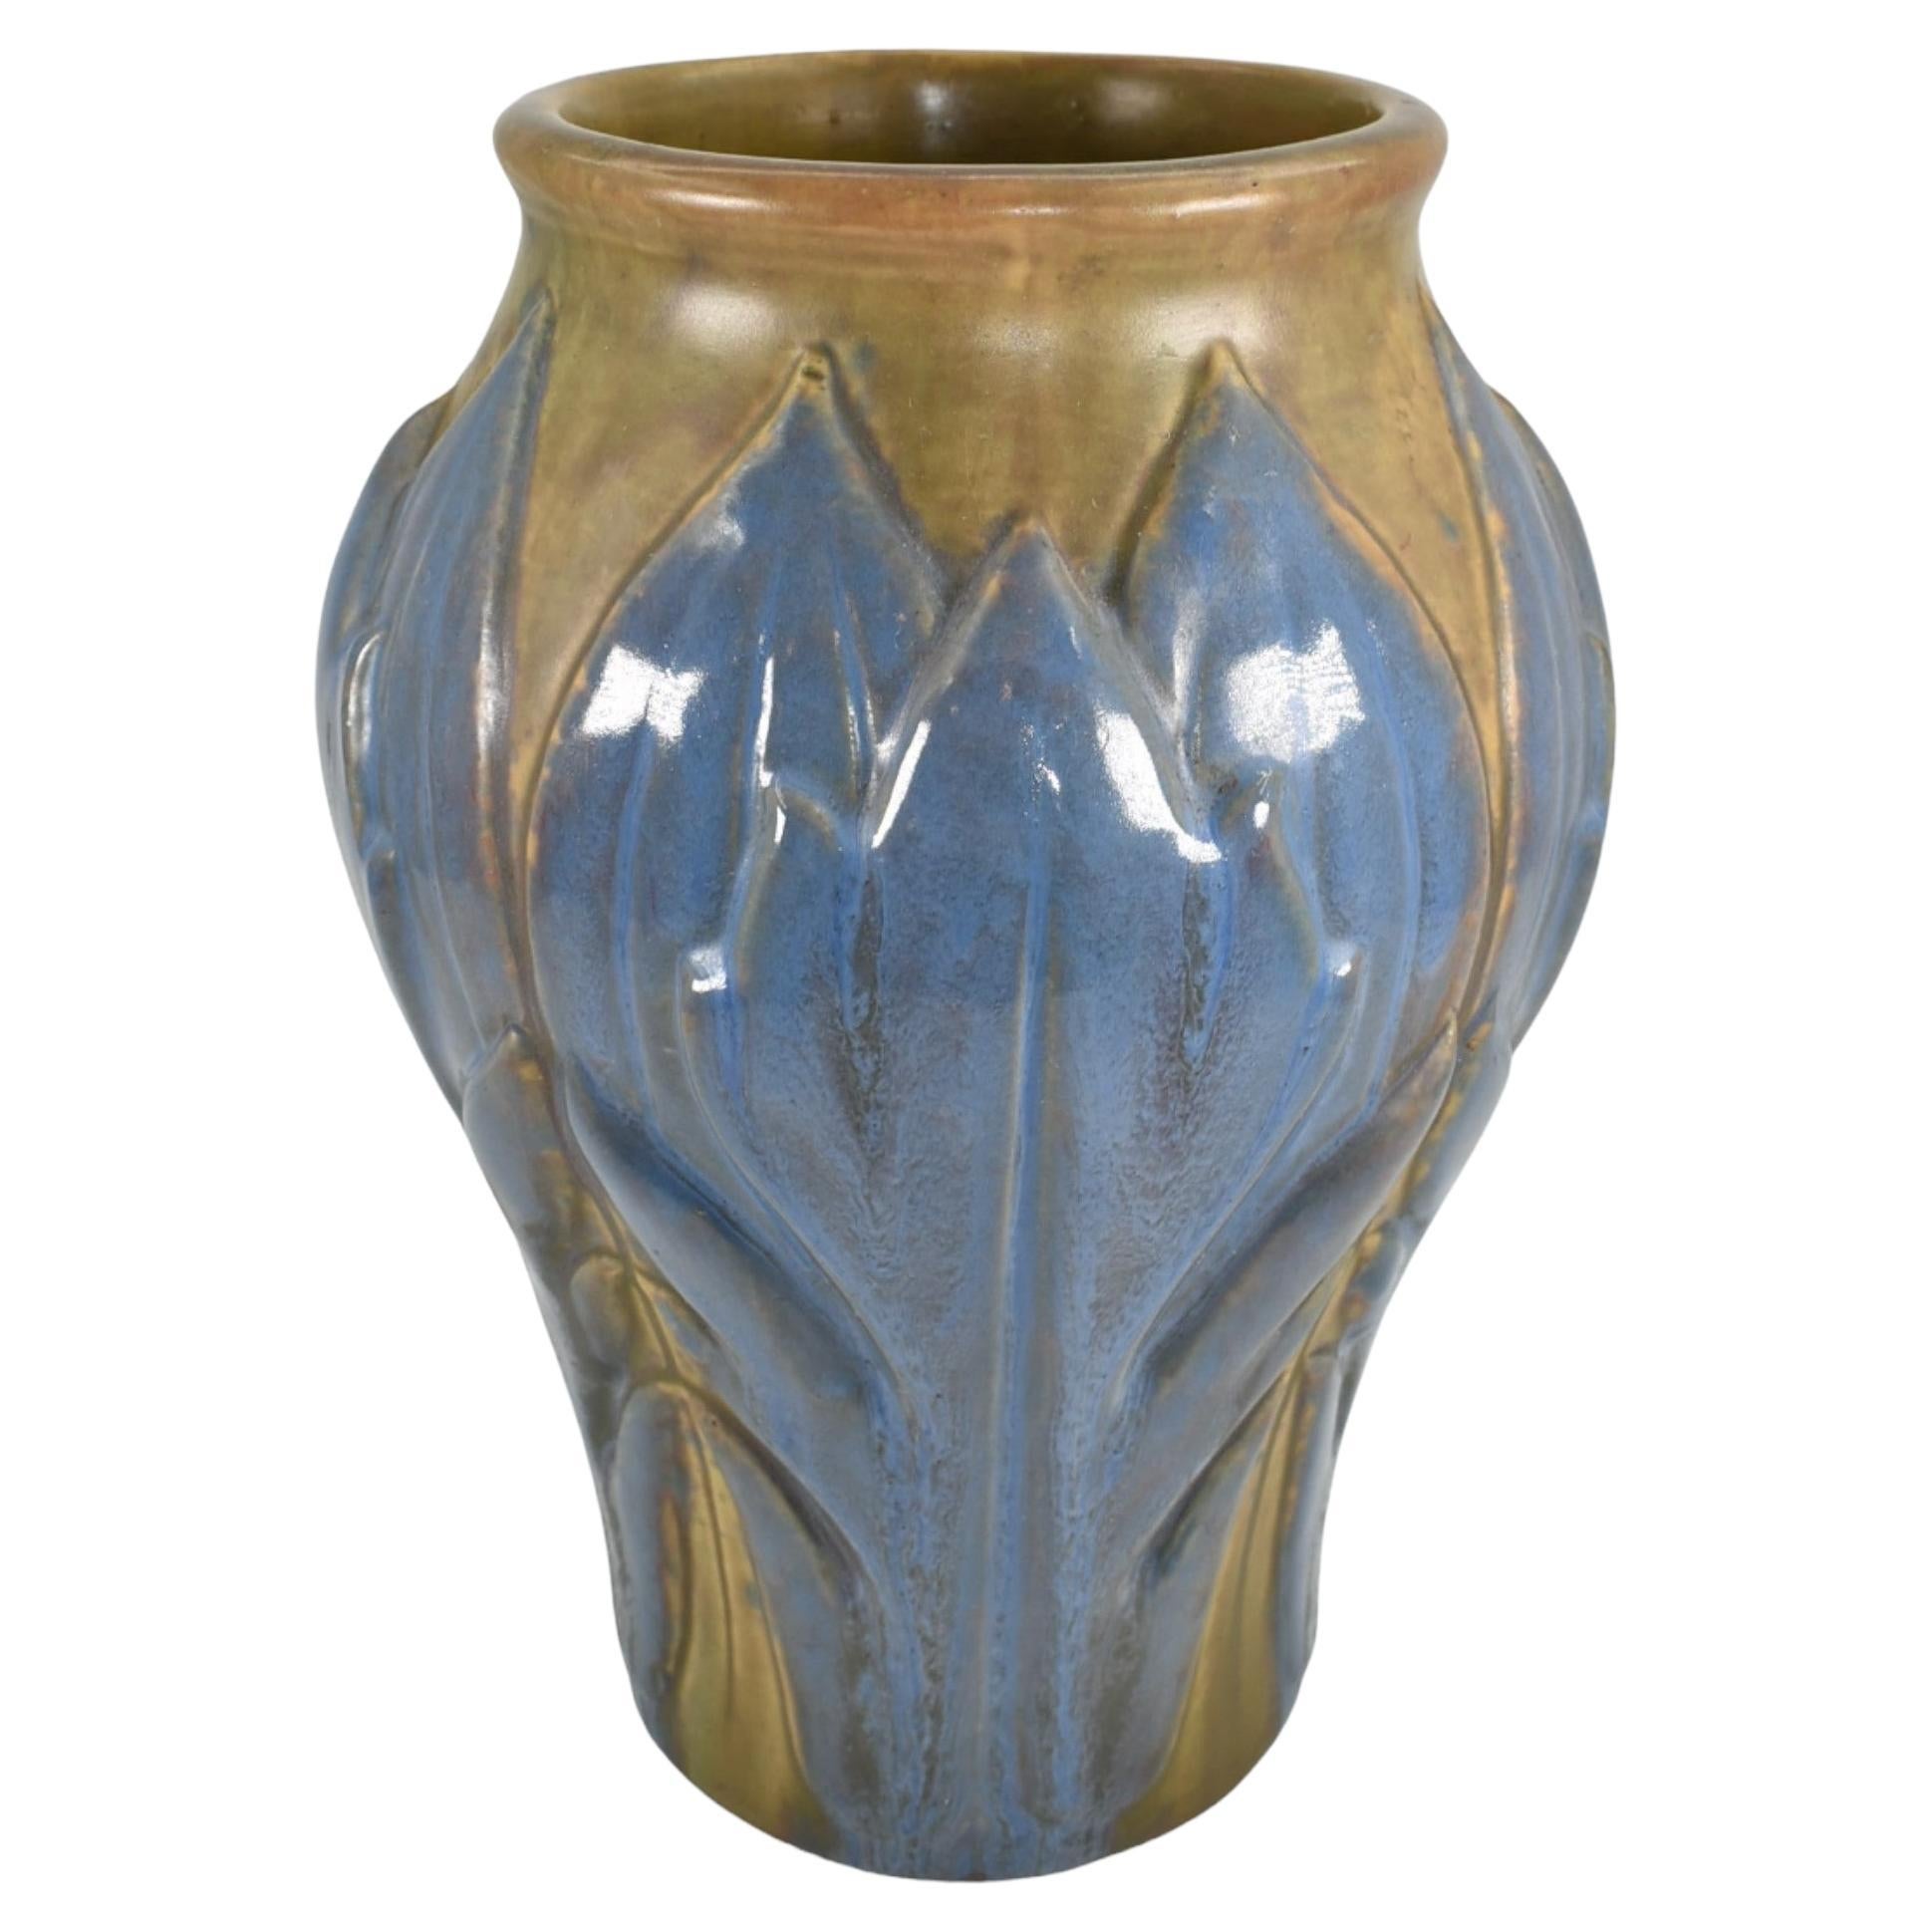 Roseville Early Velmoss Trial Glaze 1916 Vintage Art Pottery Ceramic Vase 135-10 For Sale